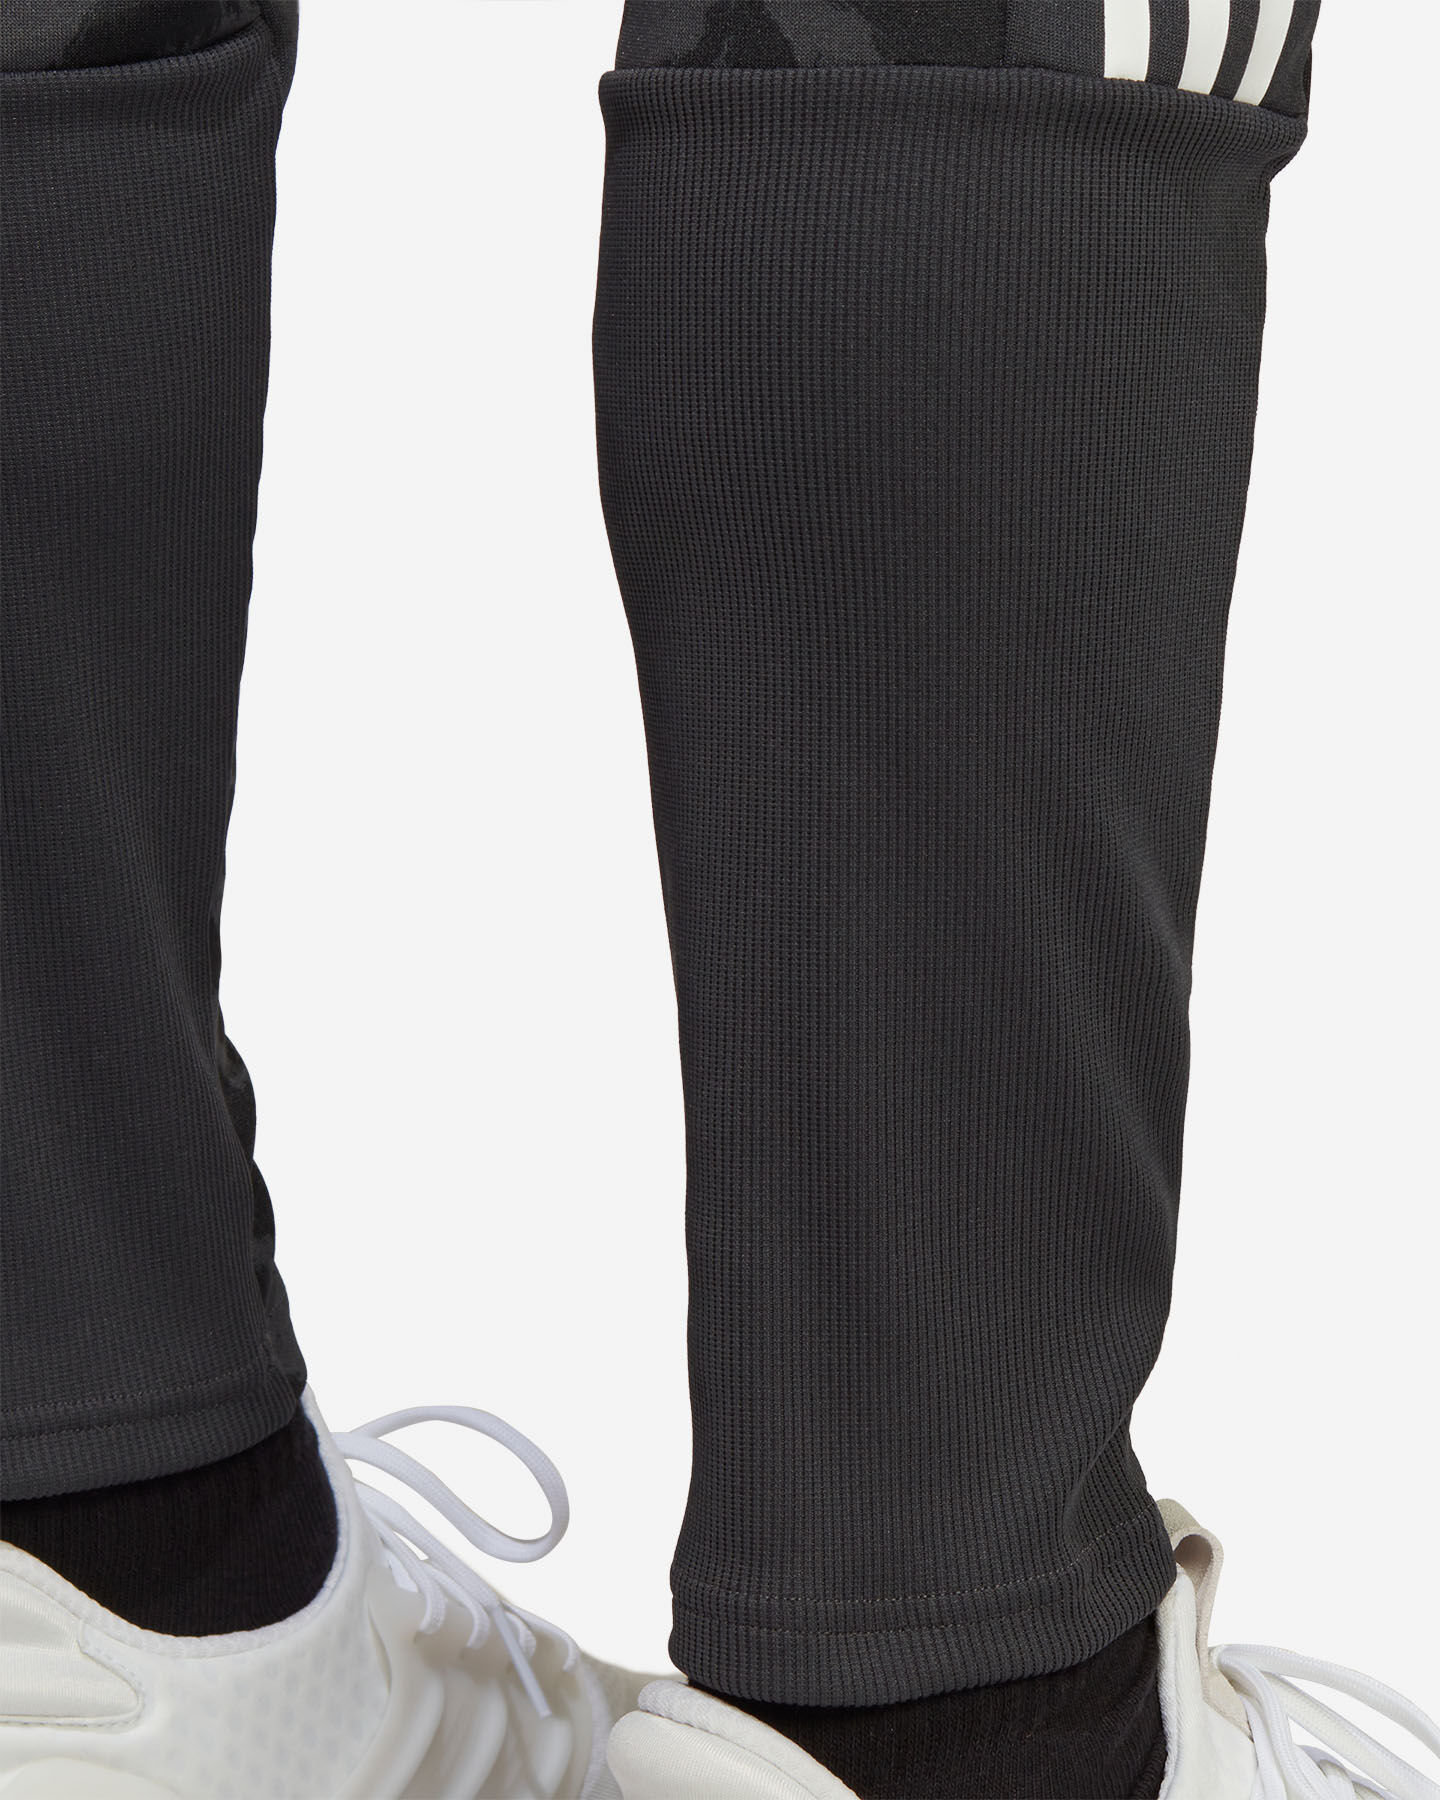  Pantalone ADIDAS TIRO M S5520241|UNI|XS scatto 4